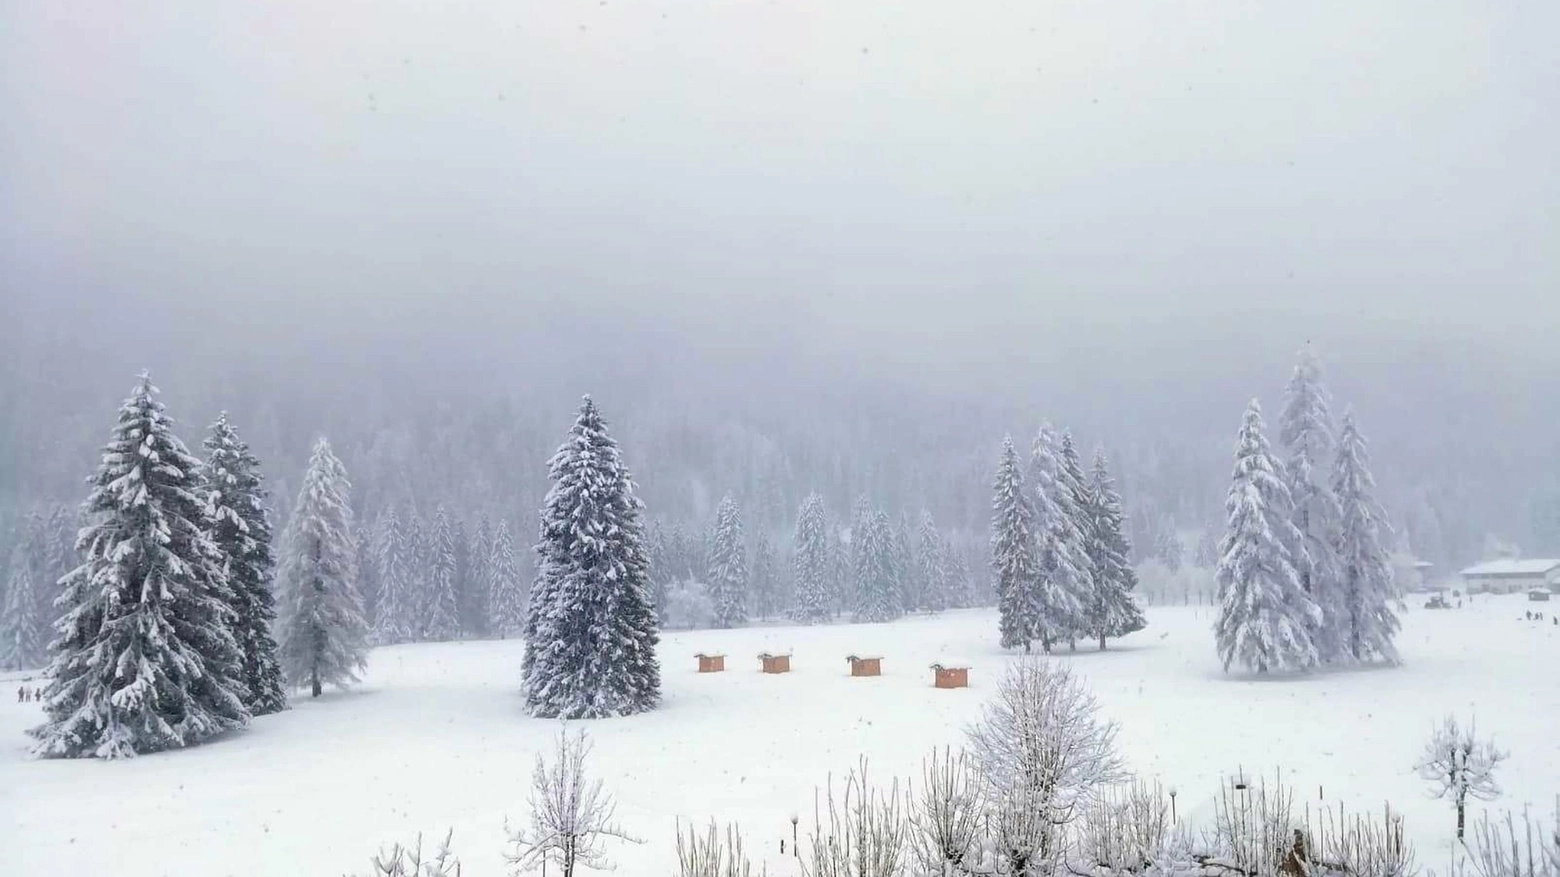 Meteo, l'ultima nevicata sulle Dolomiti bellunesi a inizio febbraio (Ansa)